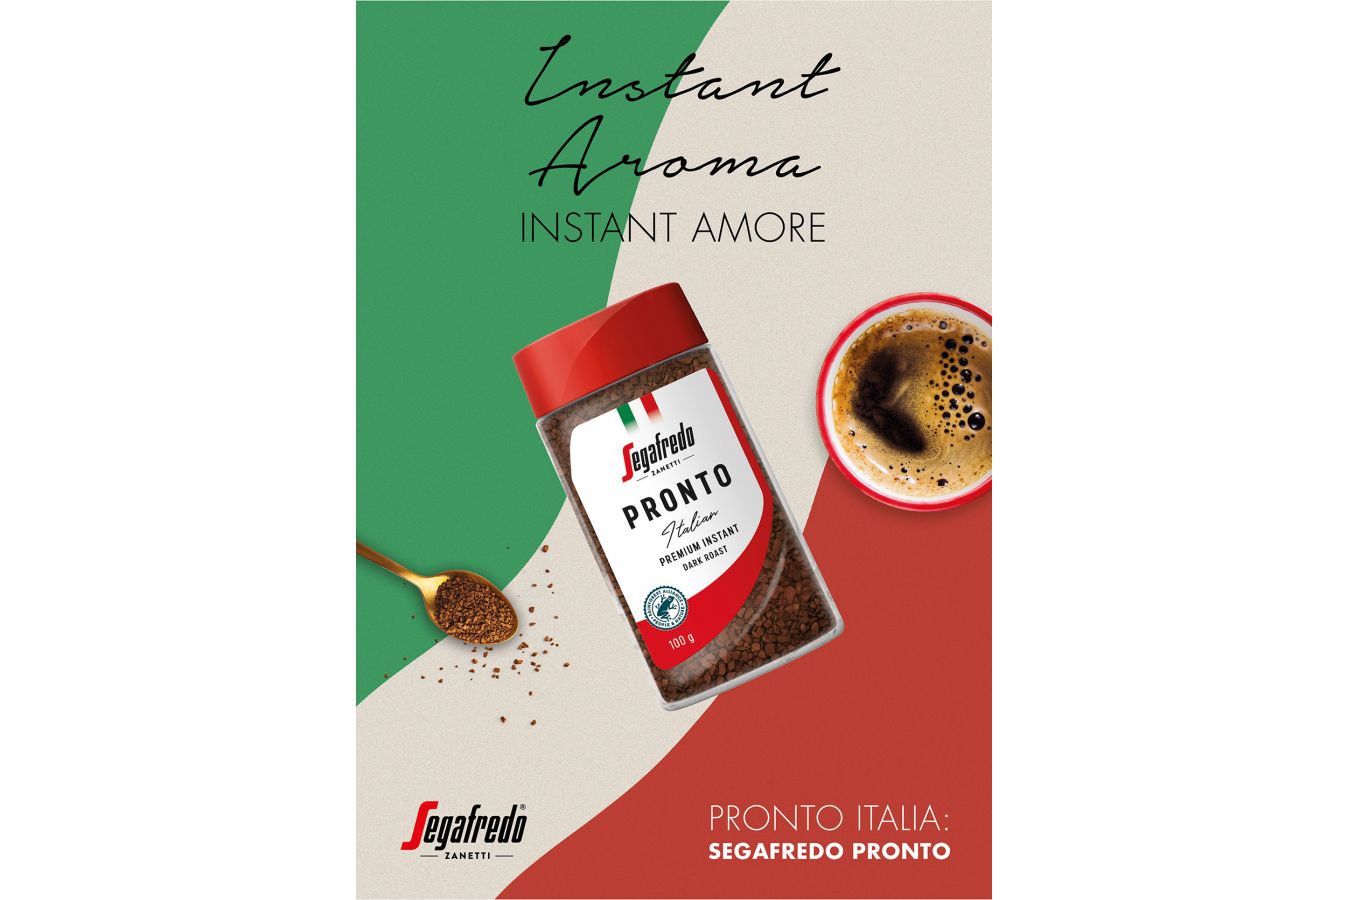 Segafredo Pronto nabízí novou prémiovou instantní kávu